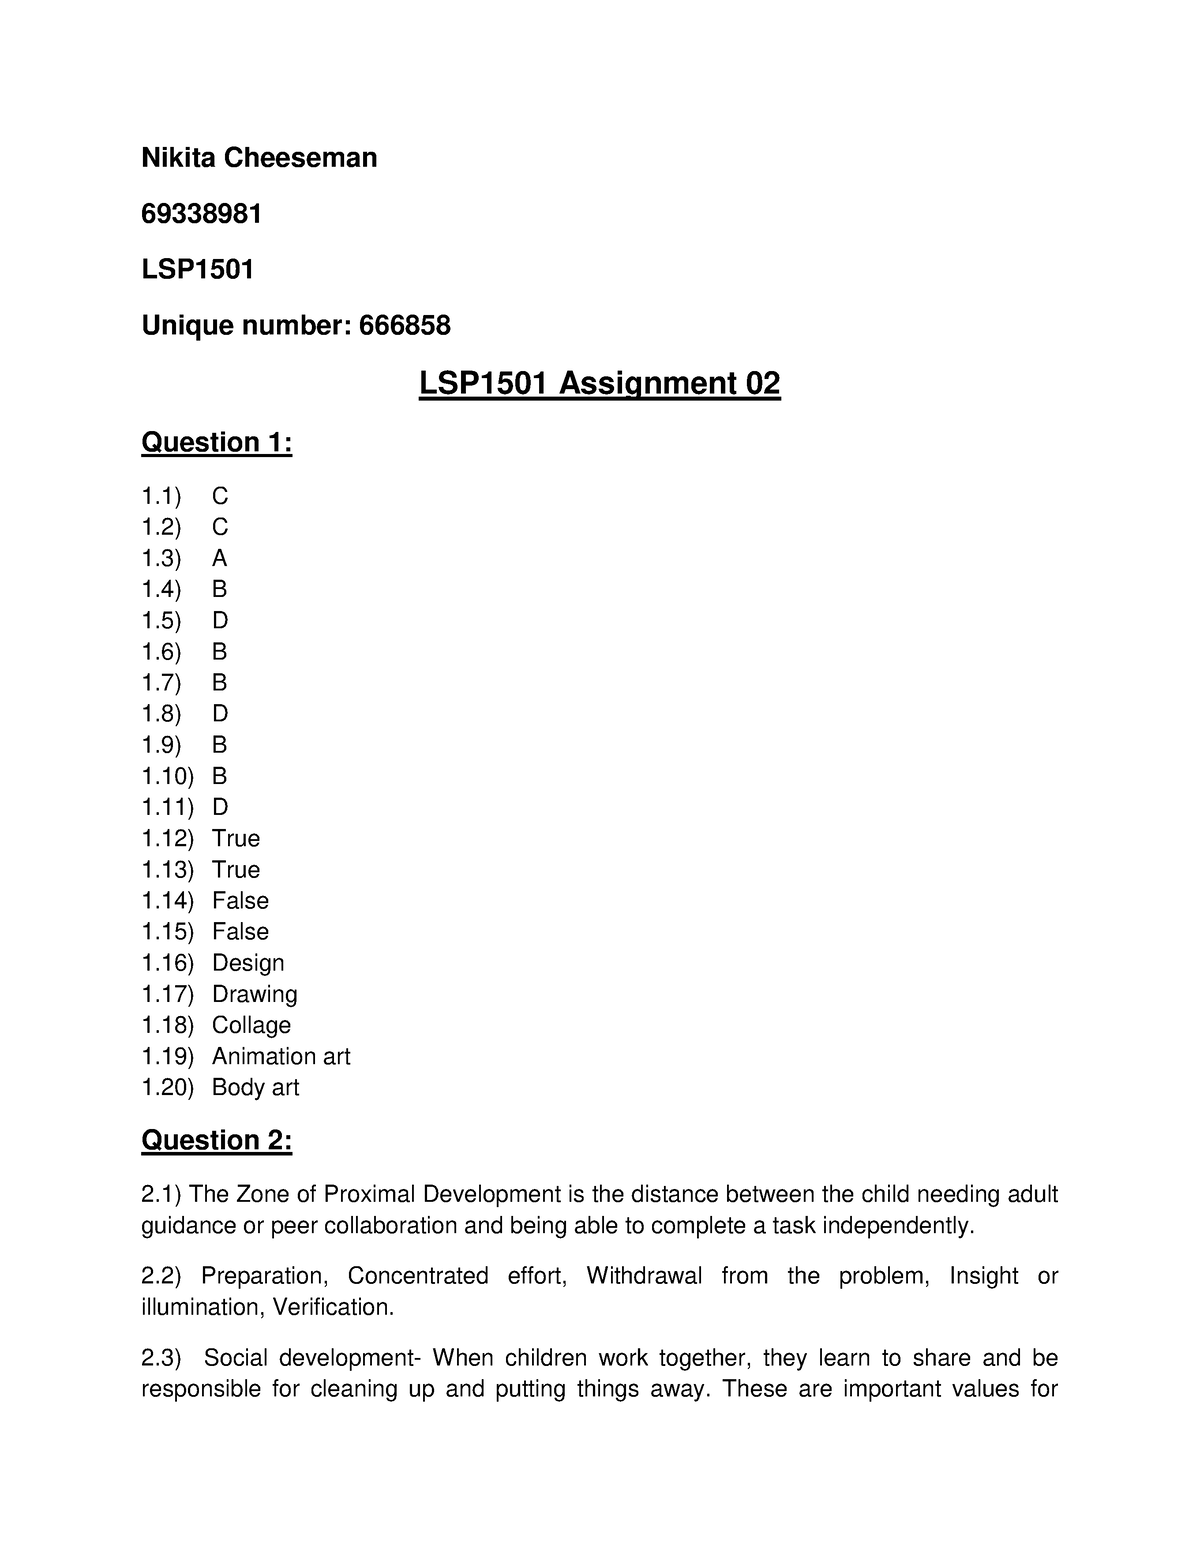 lsp1501 assignment 9